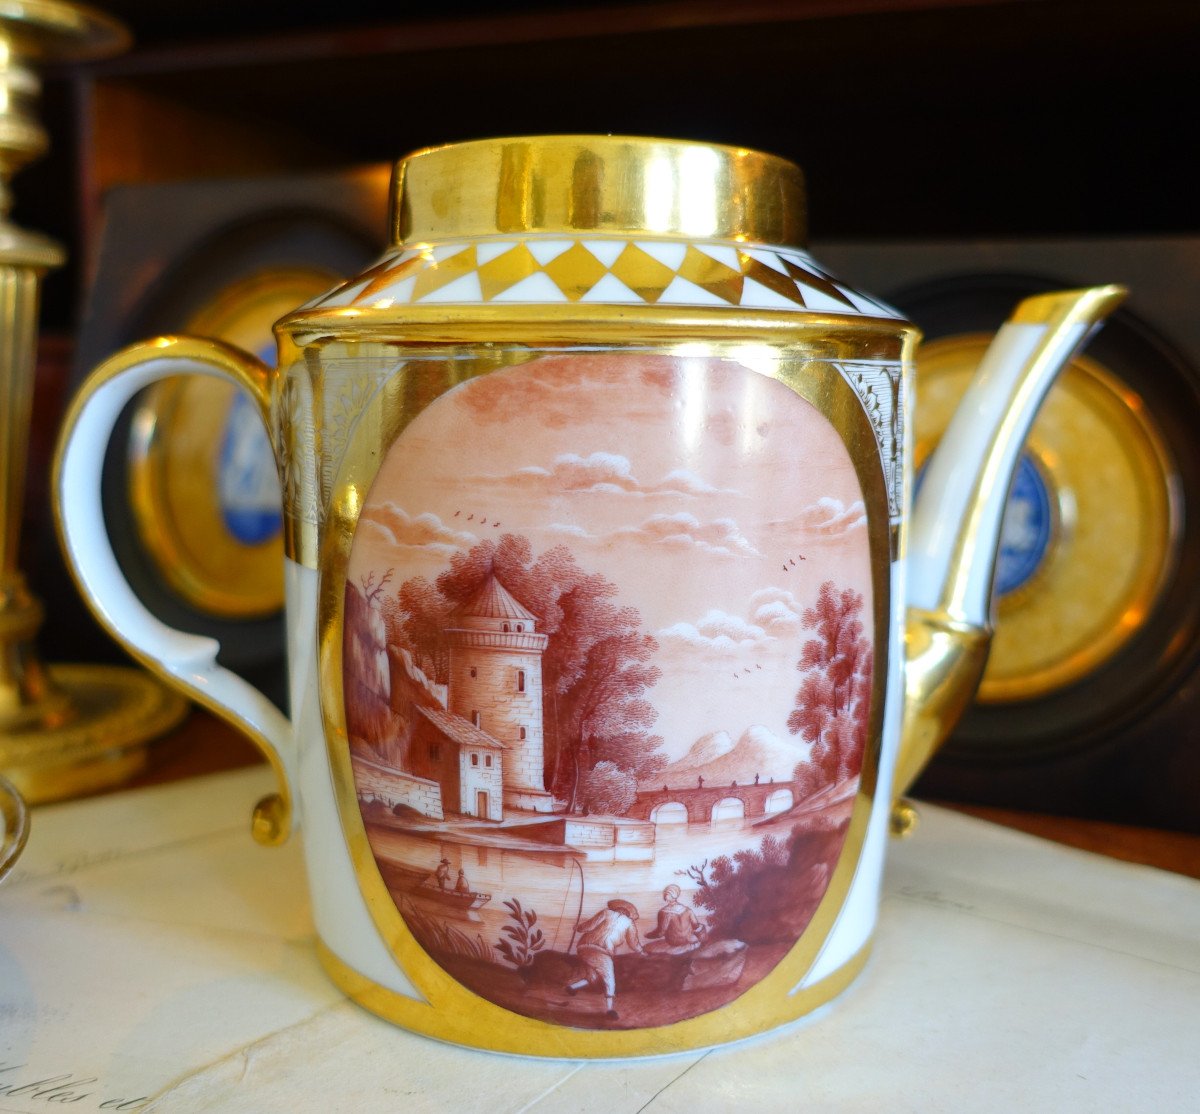 Schoelcher Manufacture - Directoire Empire Period Porcelain Teapot - Camaieu Landscapes-photo-3